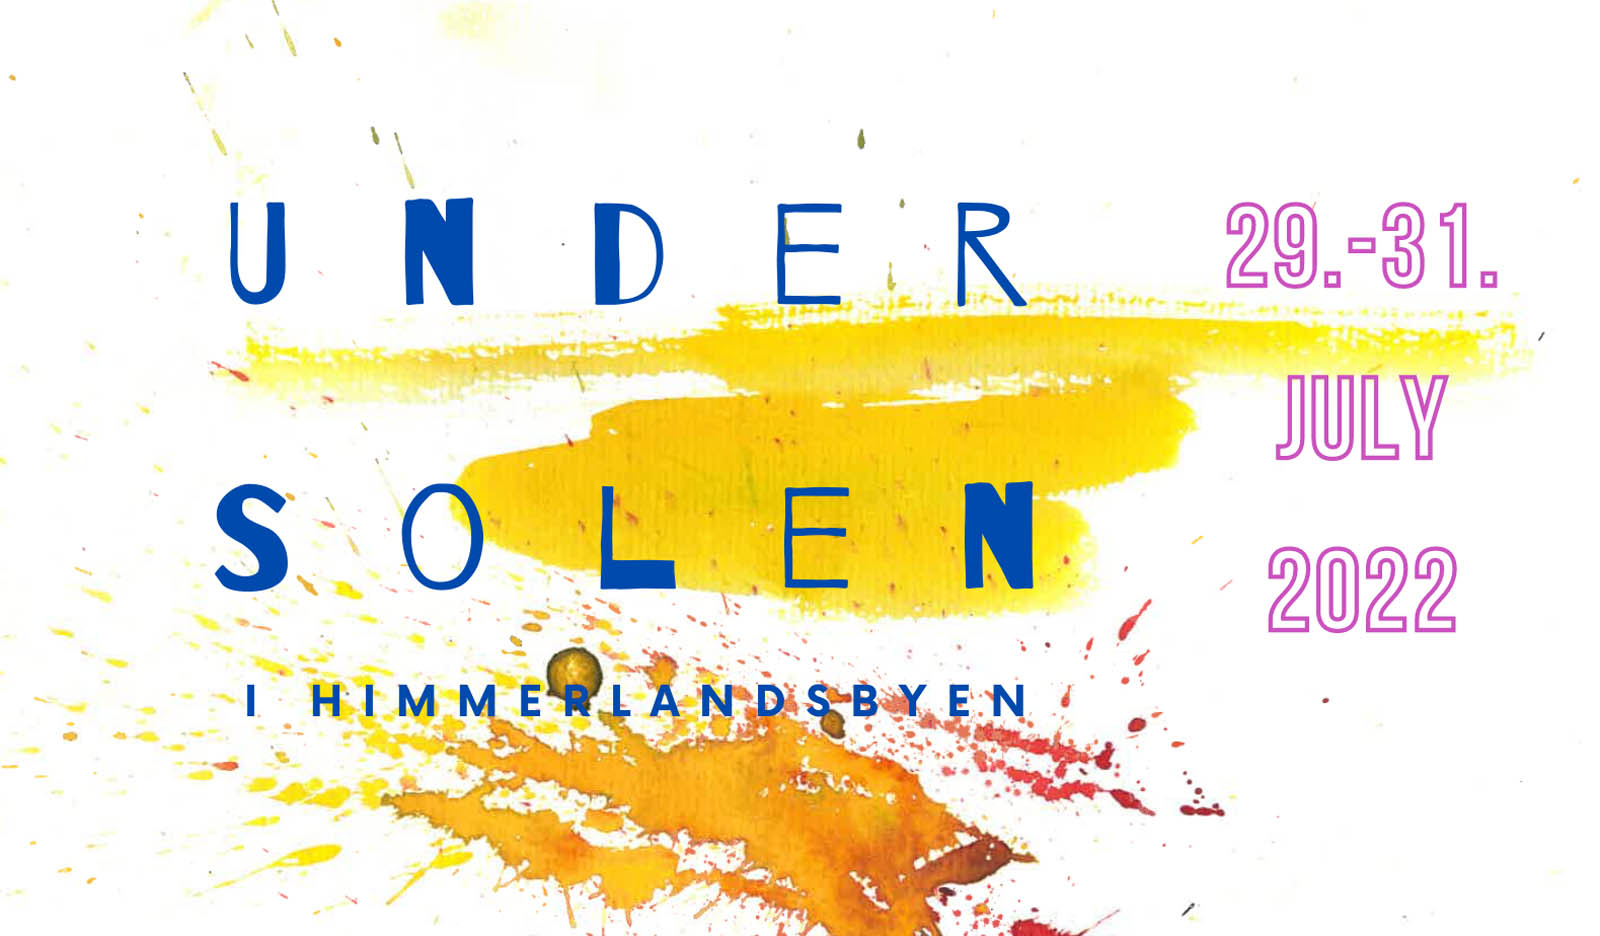 Kom til "Under Solen Festival" 29-31 juli 2022